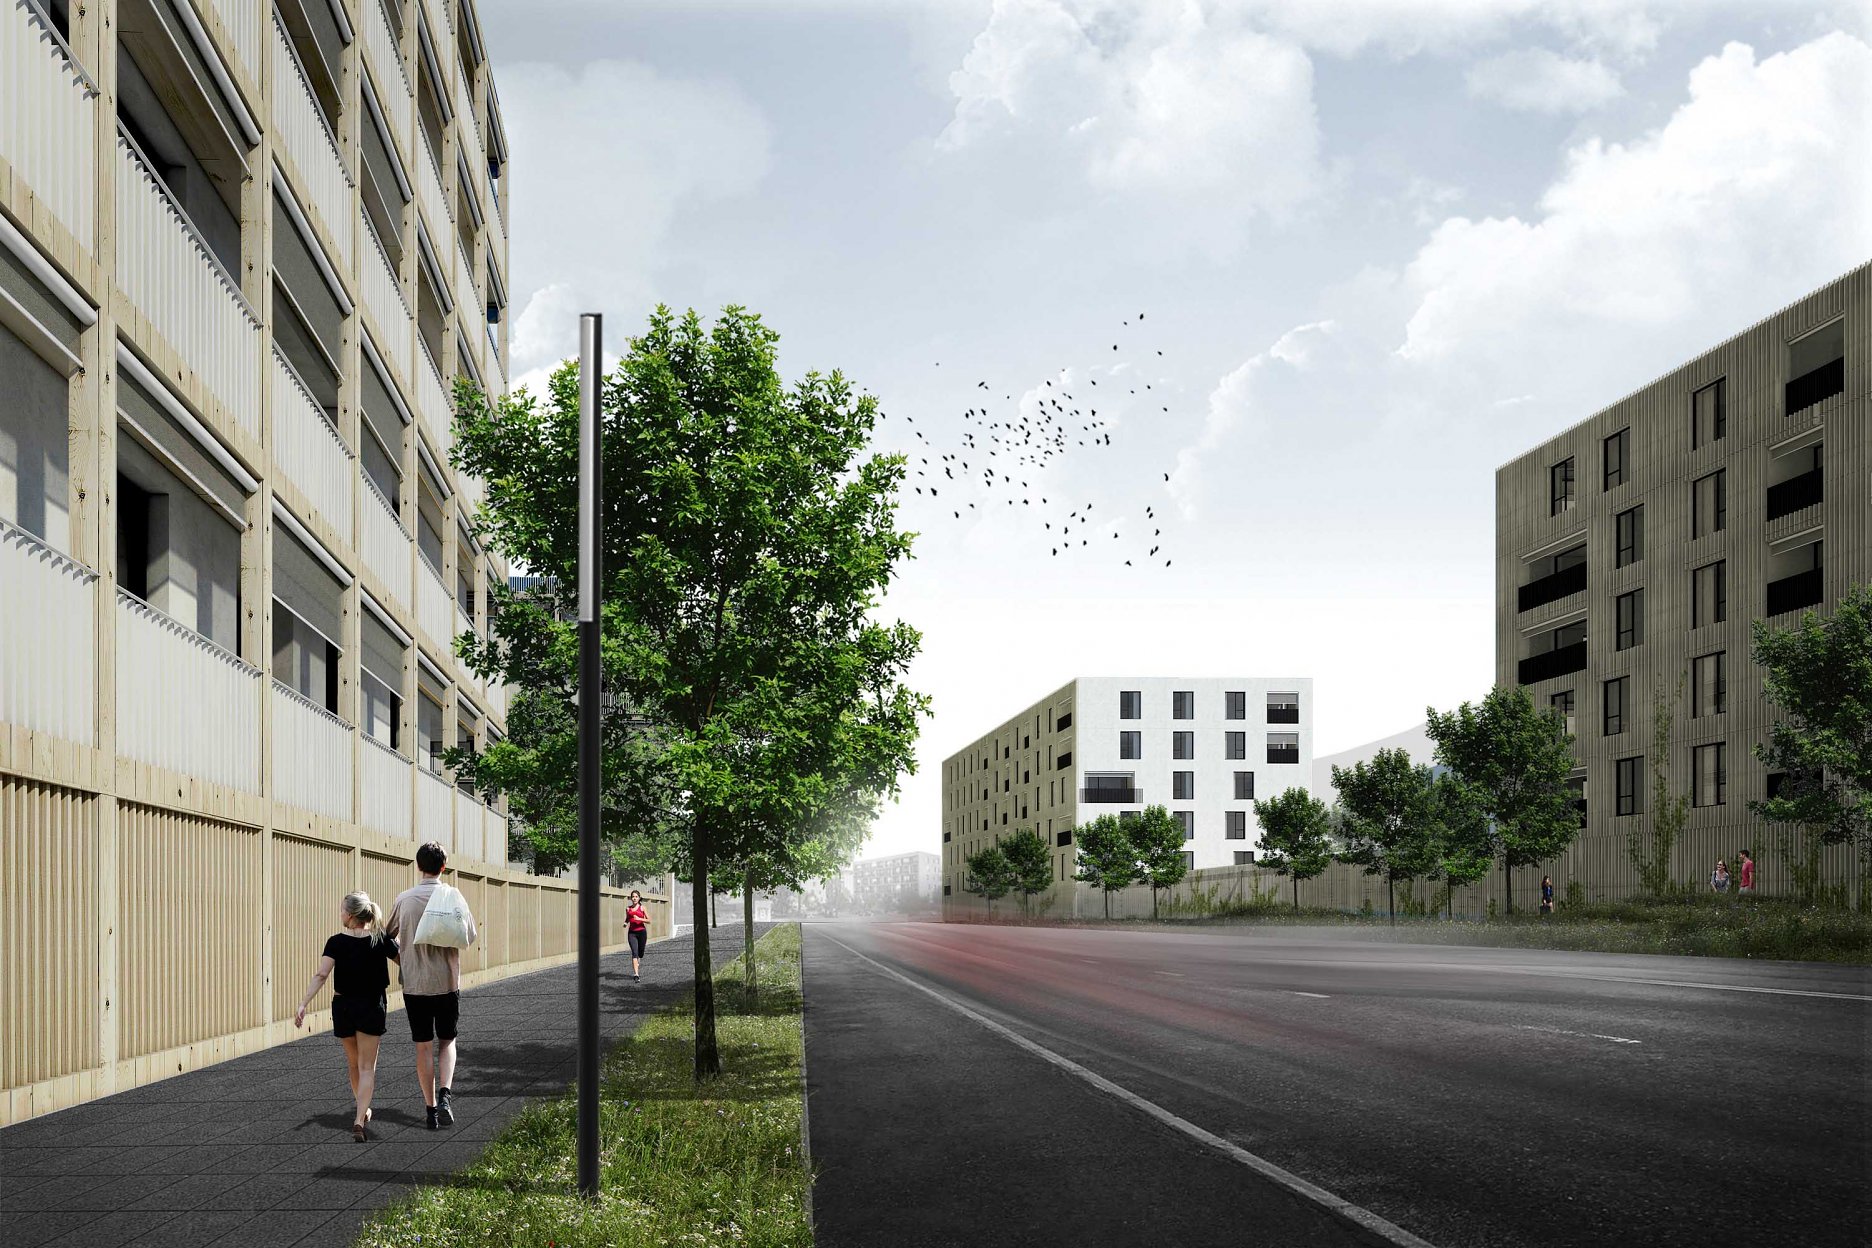 Vizualizácia: dva obytné bloky formujú nový priestor ulice, pohľadová priepustnosť parteru blokov umožňuje vizuálny kontakt s ich vnútornúm prostredím